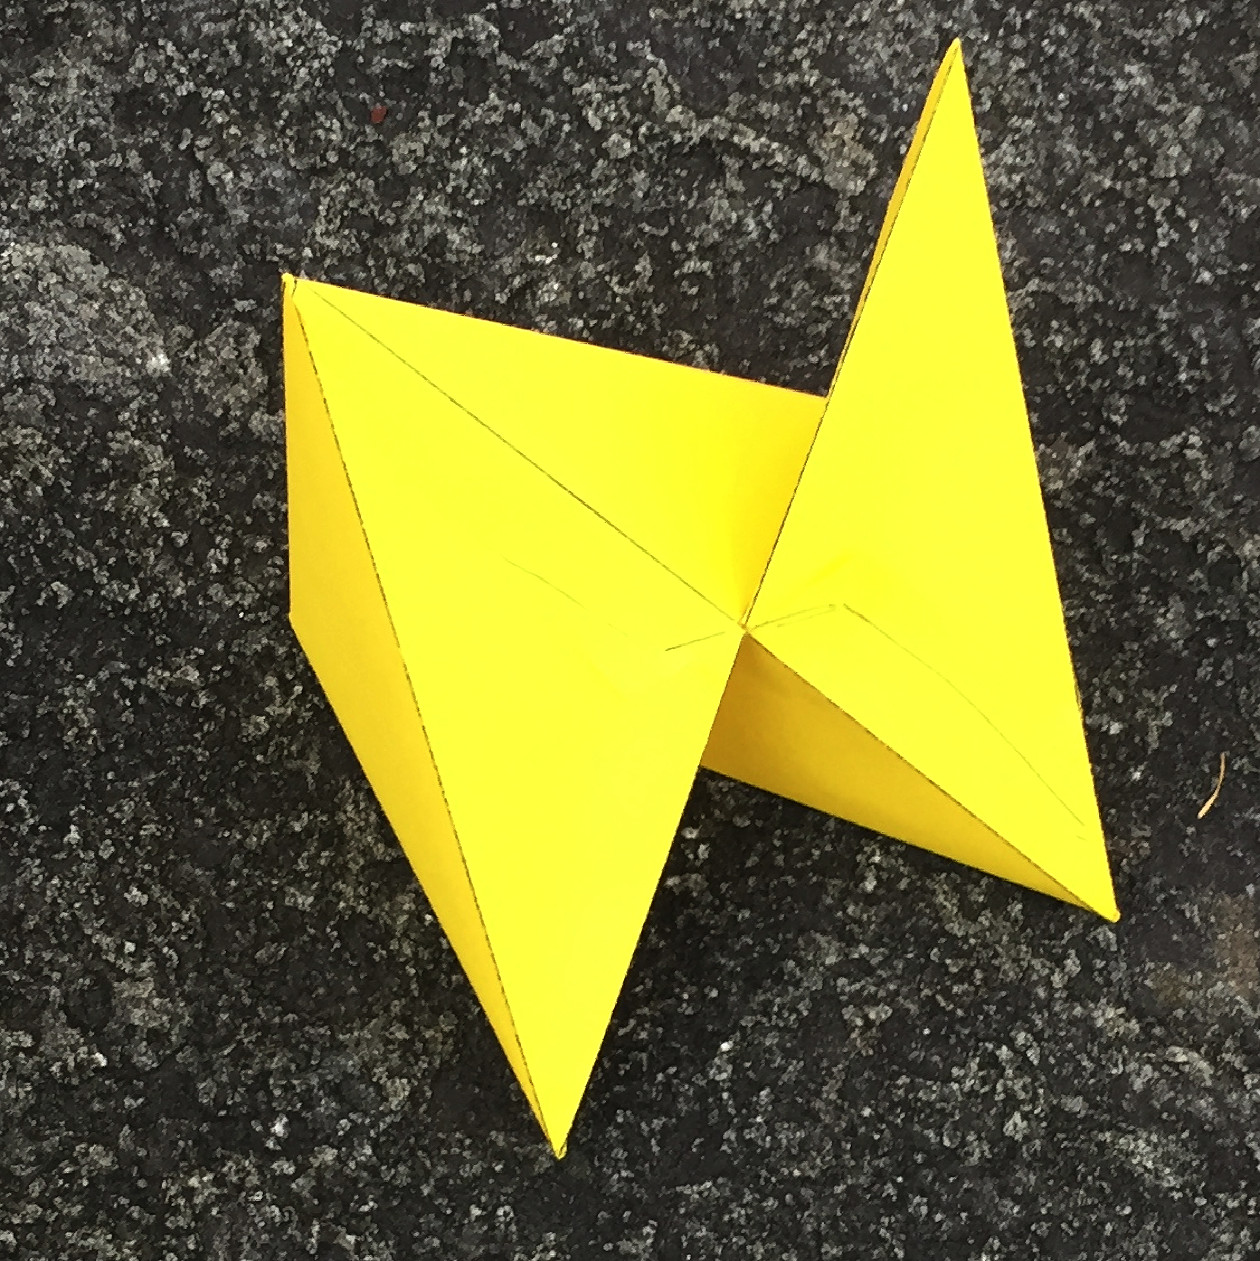 Ein Bild, das Stern, Bastelpapier, Papierkunst, Origamipapier enthält.

Automatisch generierte Beschreibung